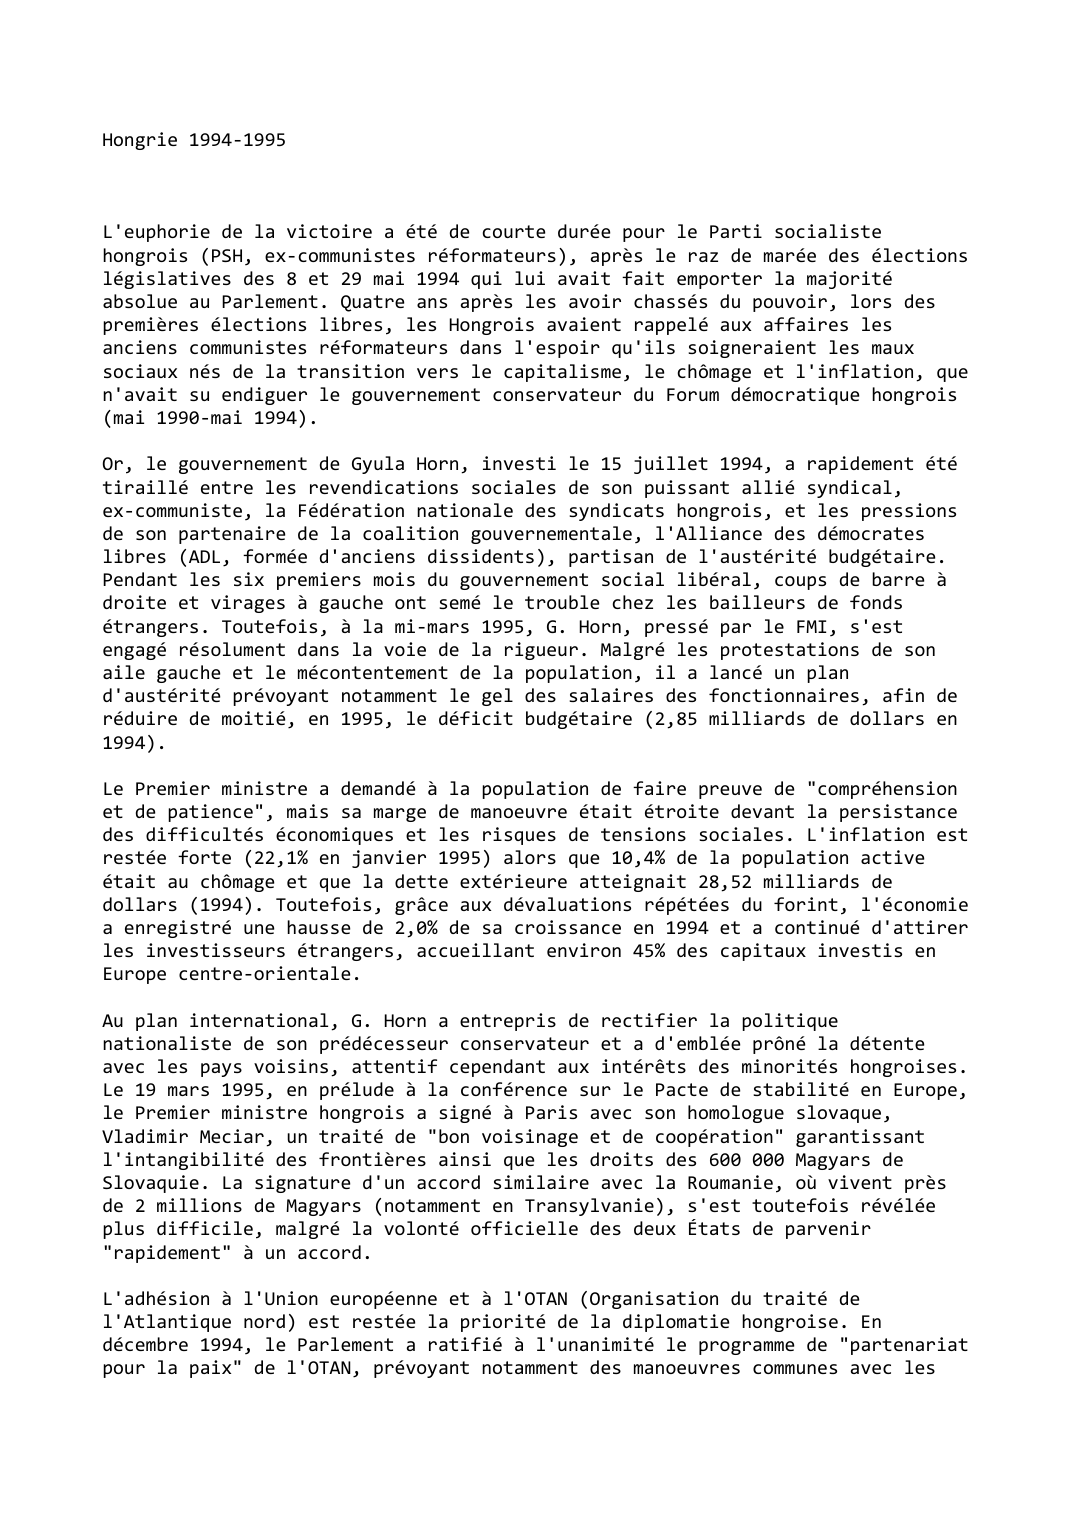 Prévisualisation du document Hongrie (1994-1995)